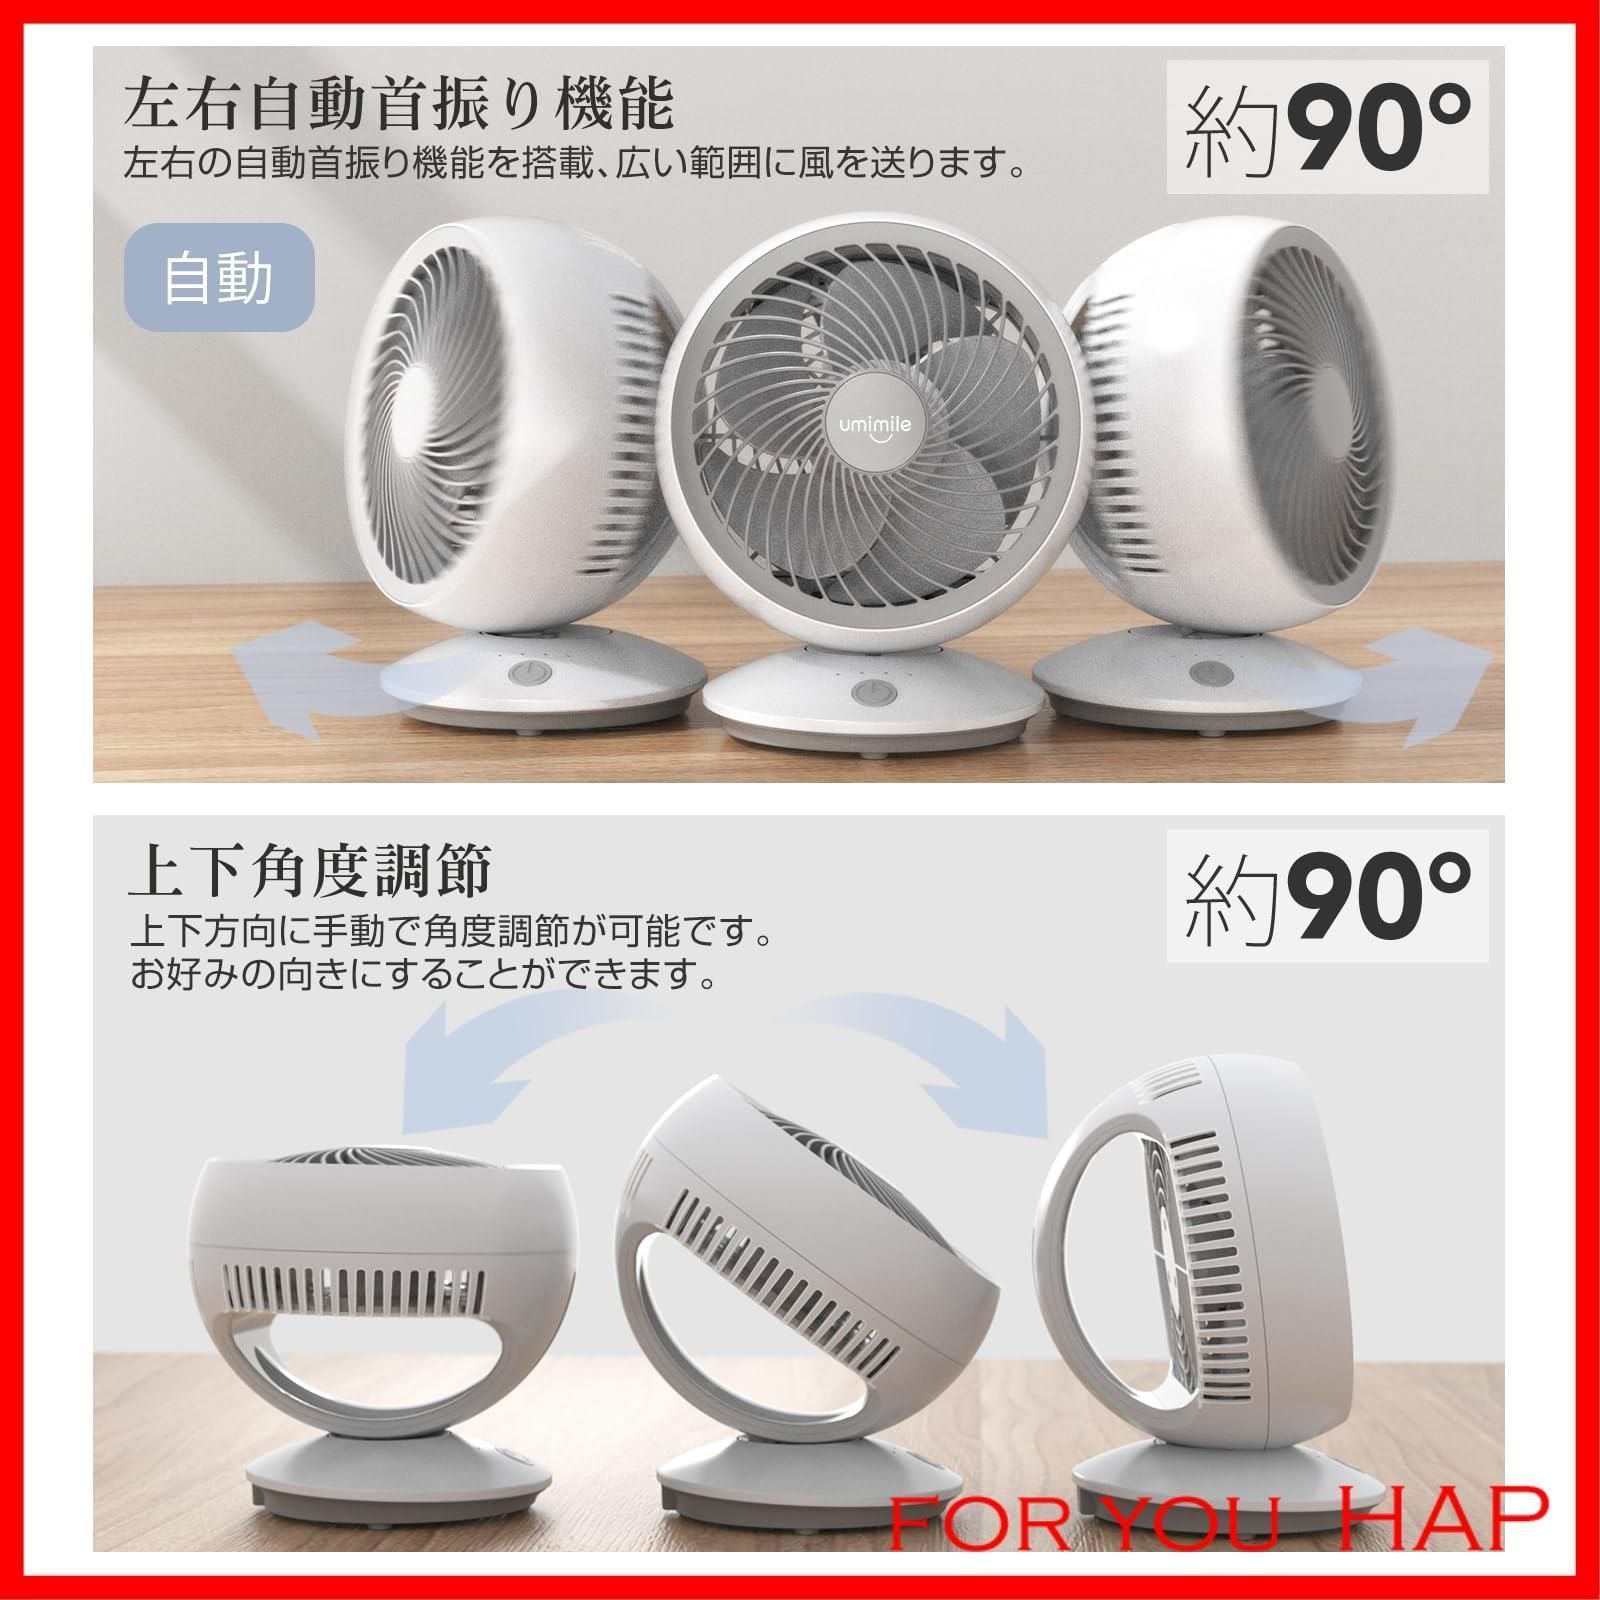 人気商品】Umimile サーキュレーター 首振り 静音 壁掛け 扇風機 小型